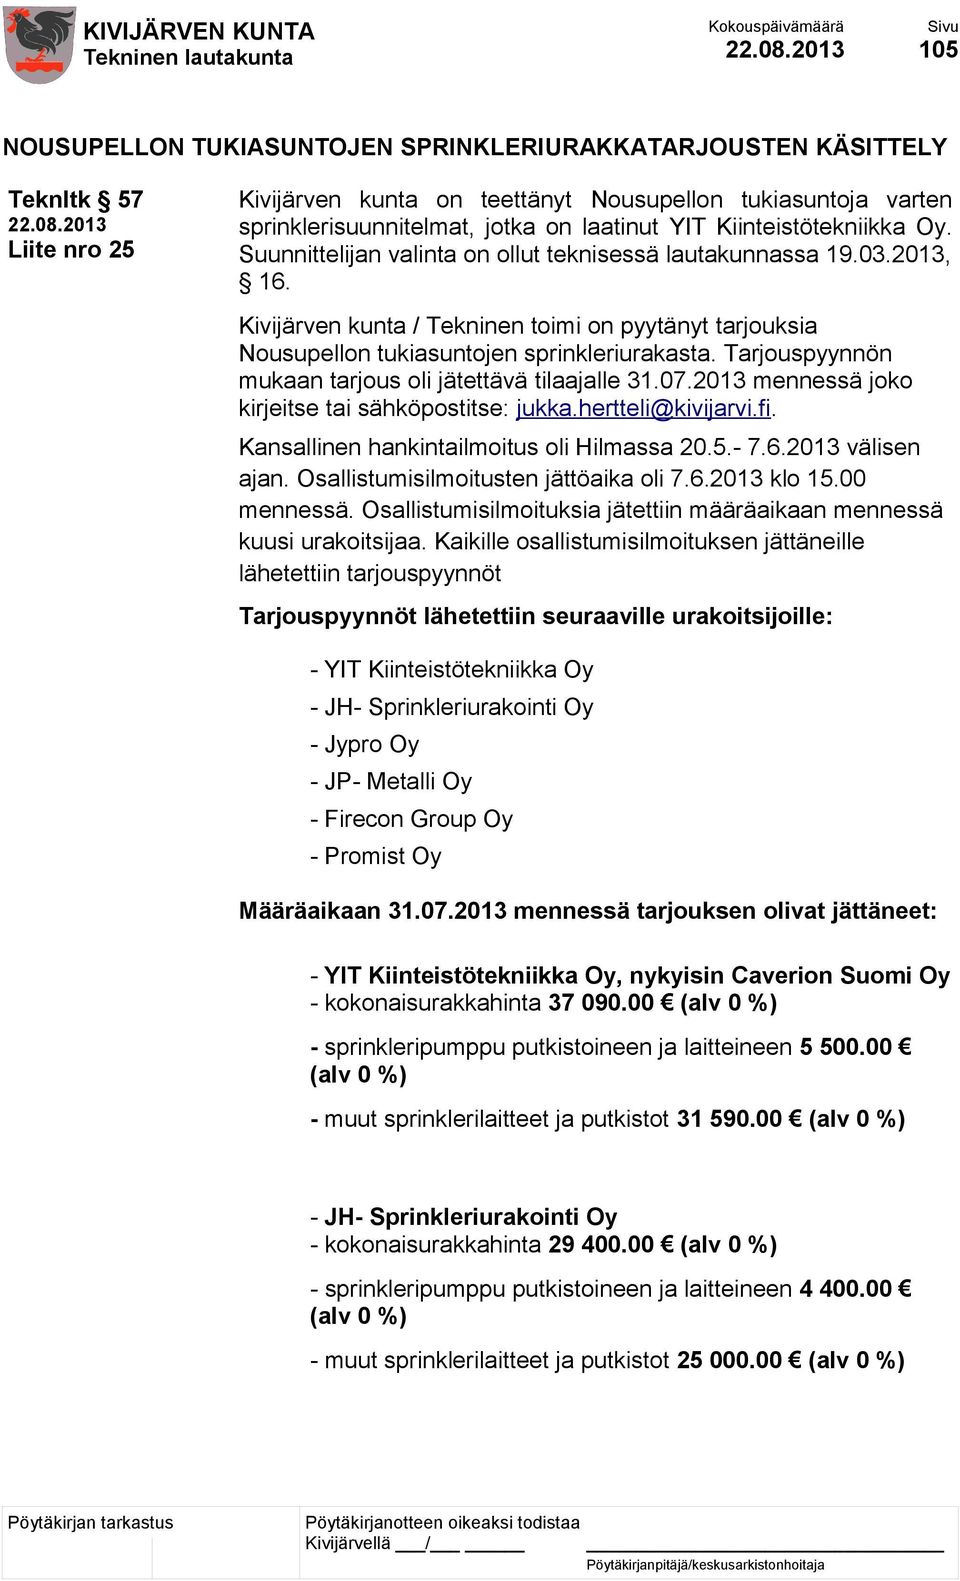 Tarjouspyynnön mukaan tarjous oli jätettävä tilaajalle 31.07.2013 mennessä joko kirjeitse tai sähköpostitse: jukka.hertteli@kivijarvi.fi. Kansallinen hankintailmoitus oli Hilmassa 20.5.- 7.6.